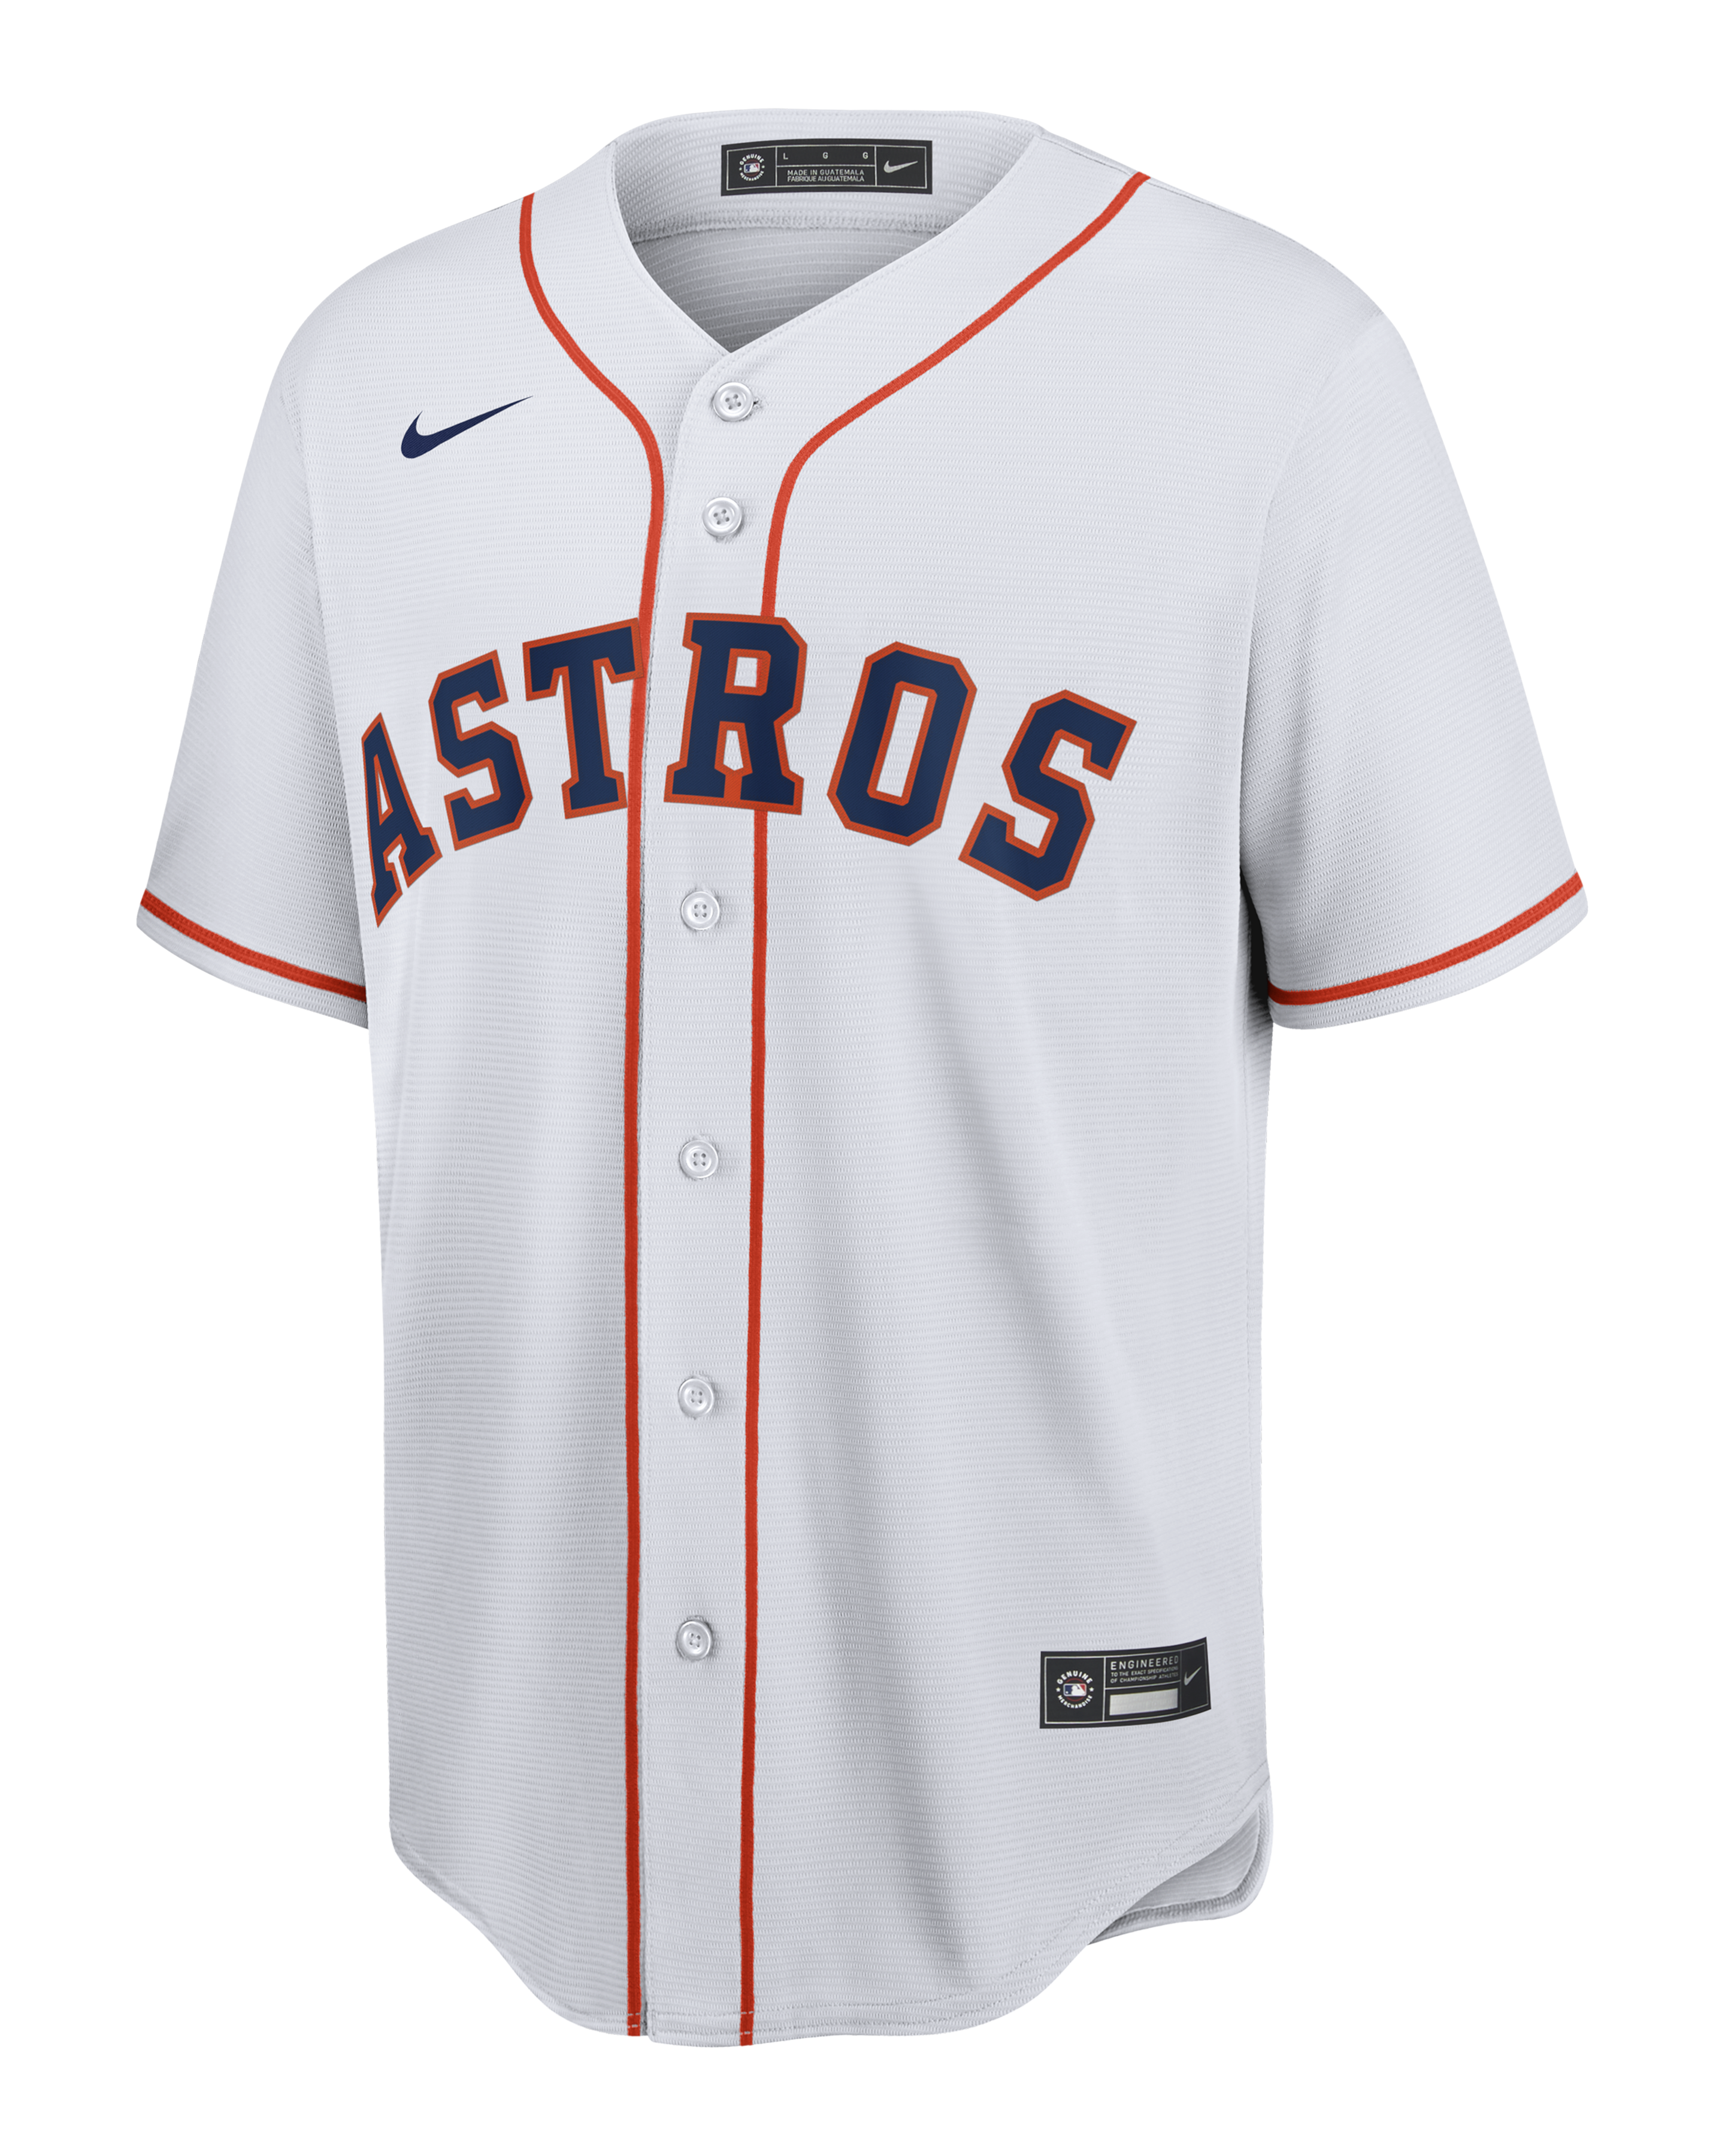 Nike MLB Houston Astros (Jeff Bagwell) Men's Cooperstown Baseball